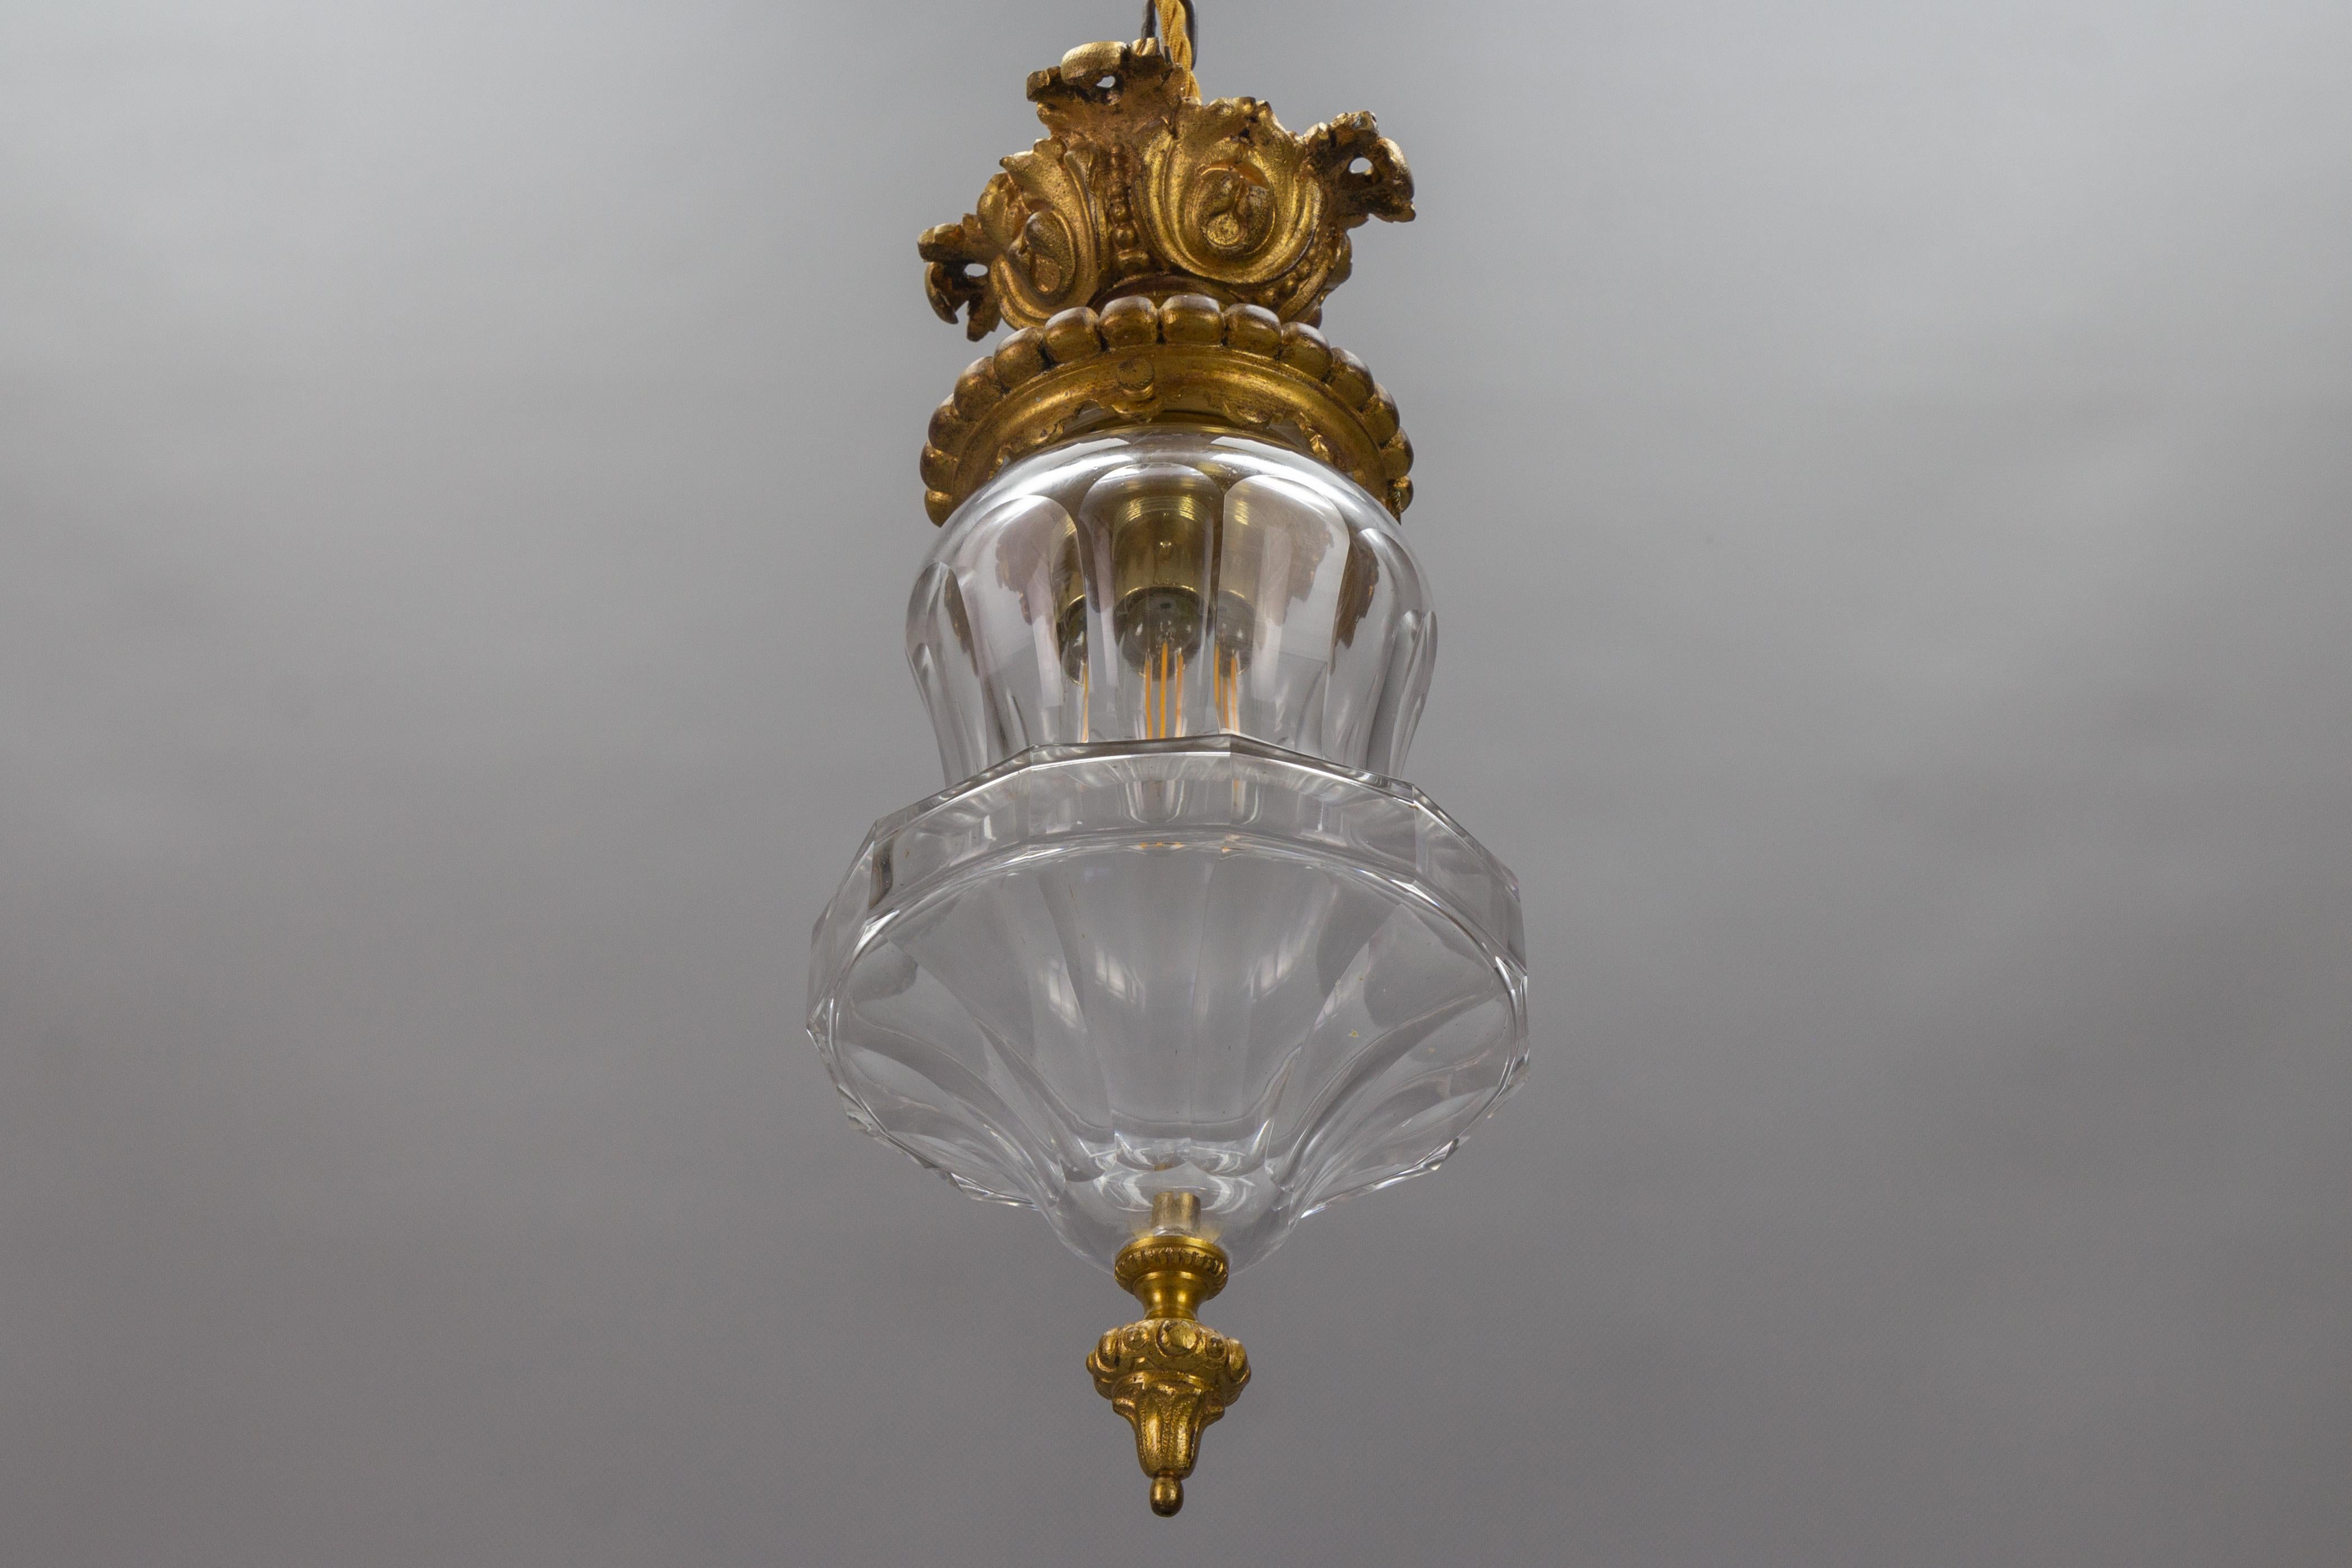 Bronze und Kristallglas im französischen Rokoko-Stil, um 1900.
Diese bezaubernde Unterputz- oder Deckenleuchte verfügt über eine verschnörkelte Bronzehalterung und einen wunderschön geformten Lampenschirm aus Kristallglas mit einem Bronzeknauf.
Eine